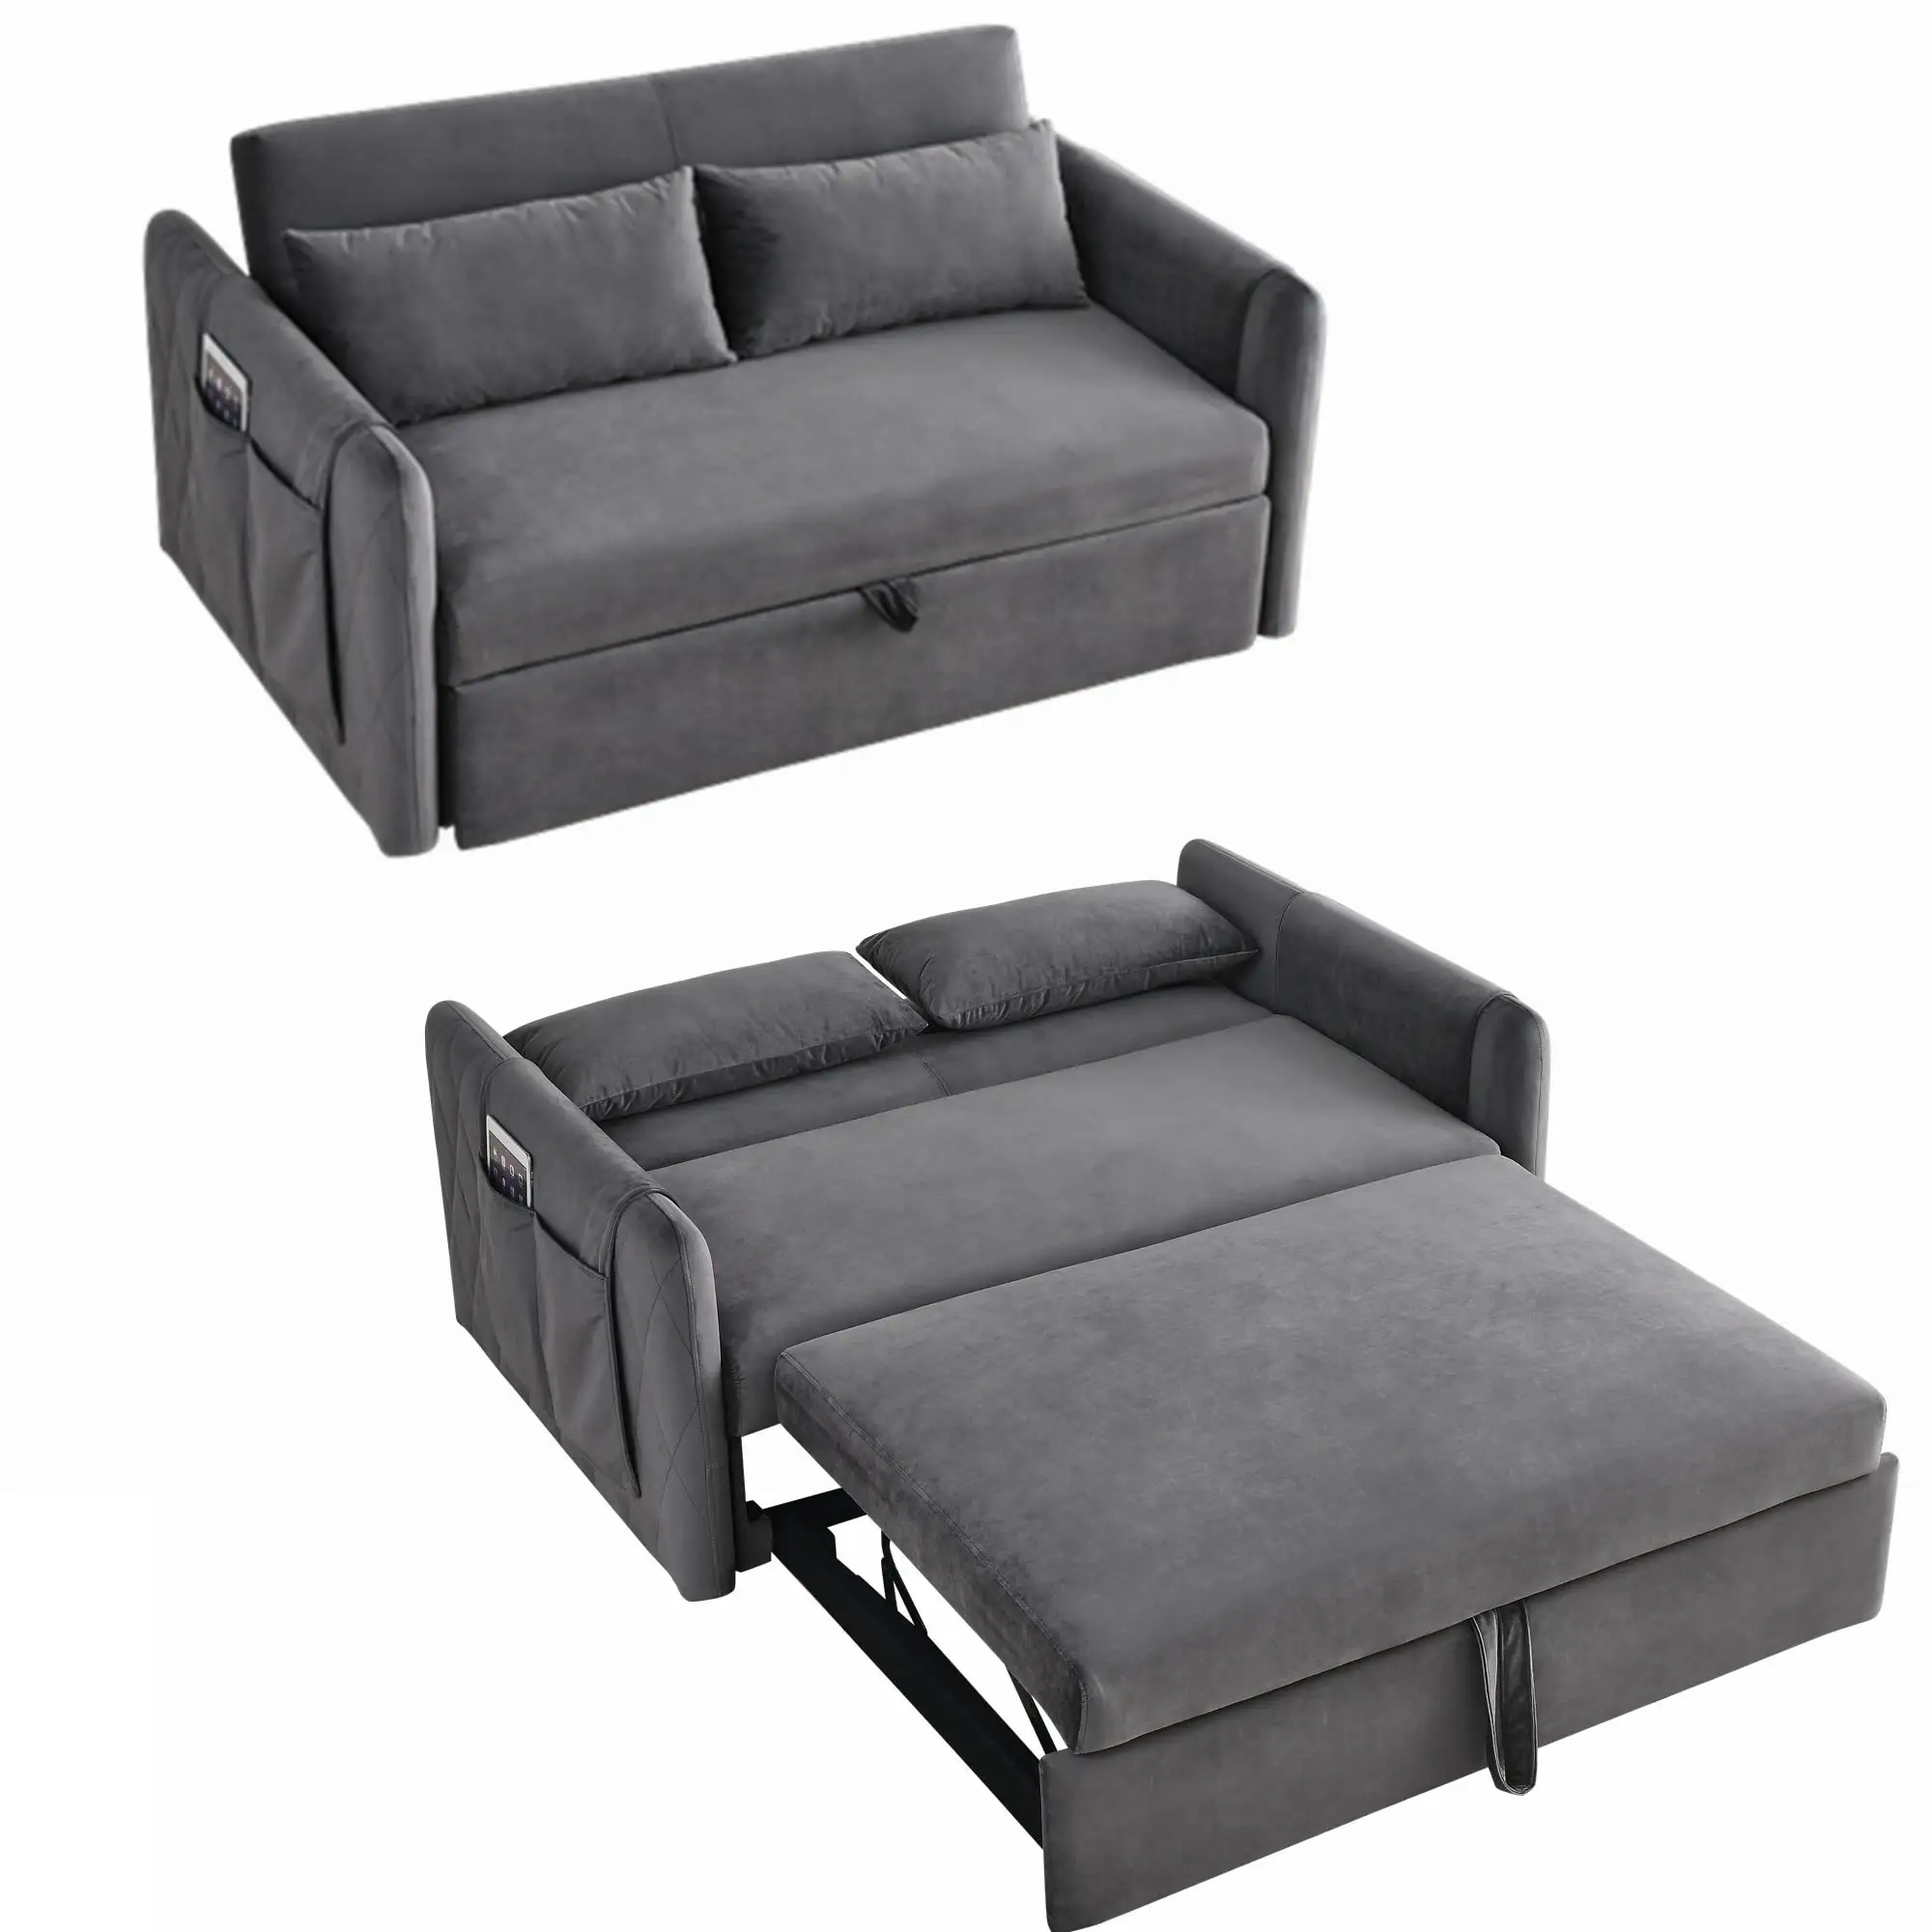 Haute qualité 2 palves tissu gris double salon mécanisme pliant canapé sofa cum lits ensemble meubles pour la maison avec sto